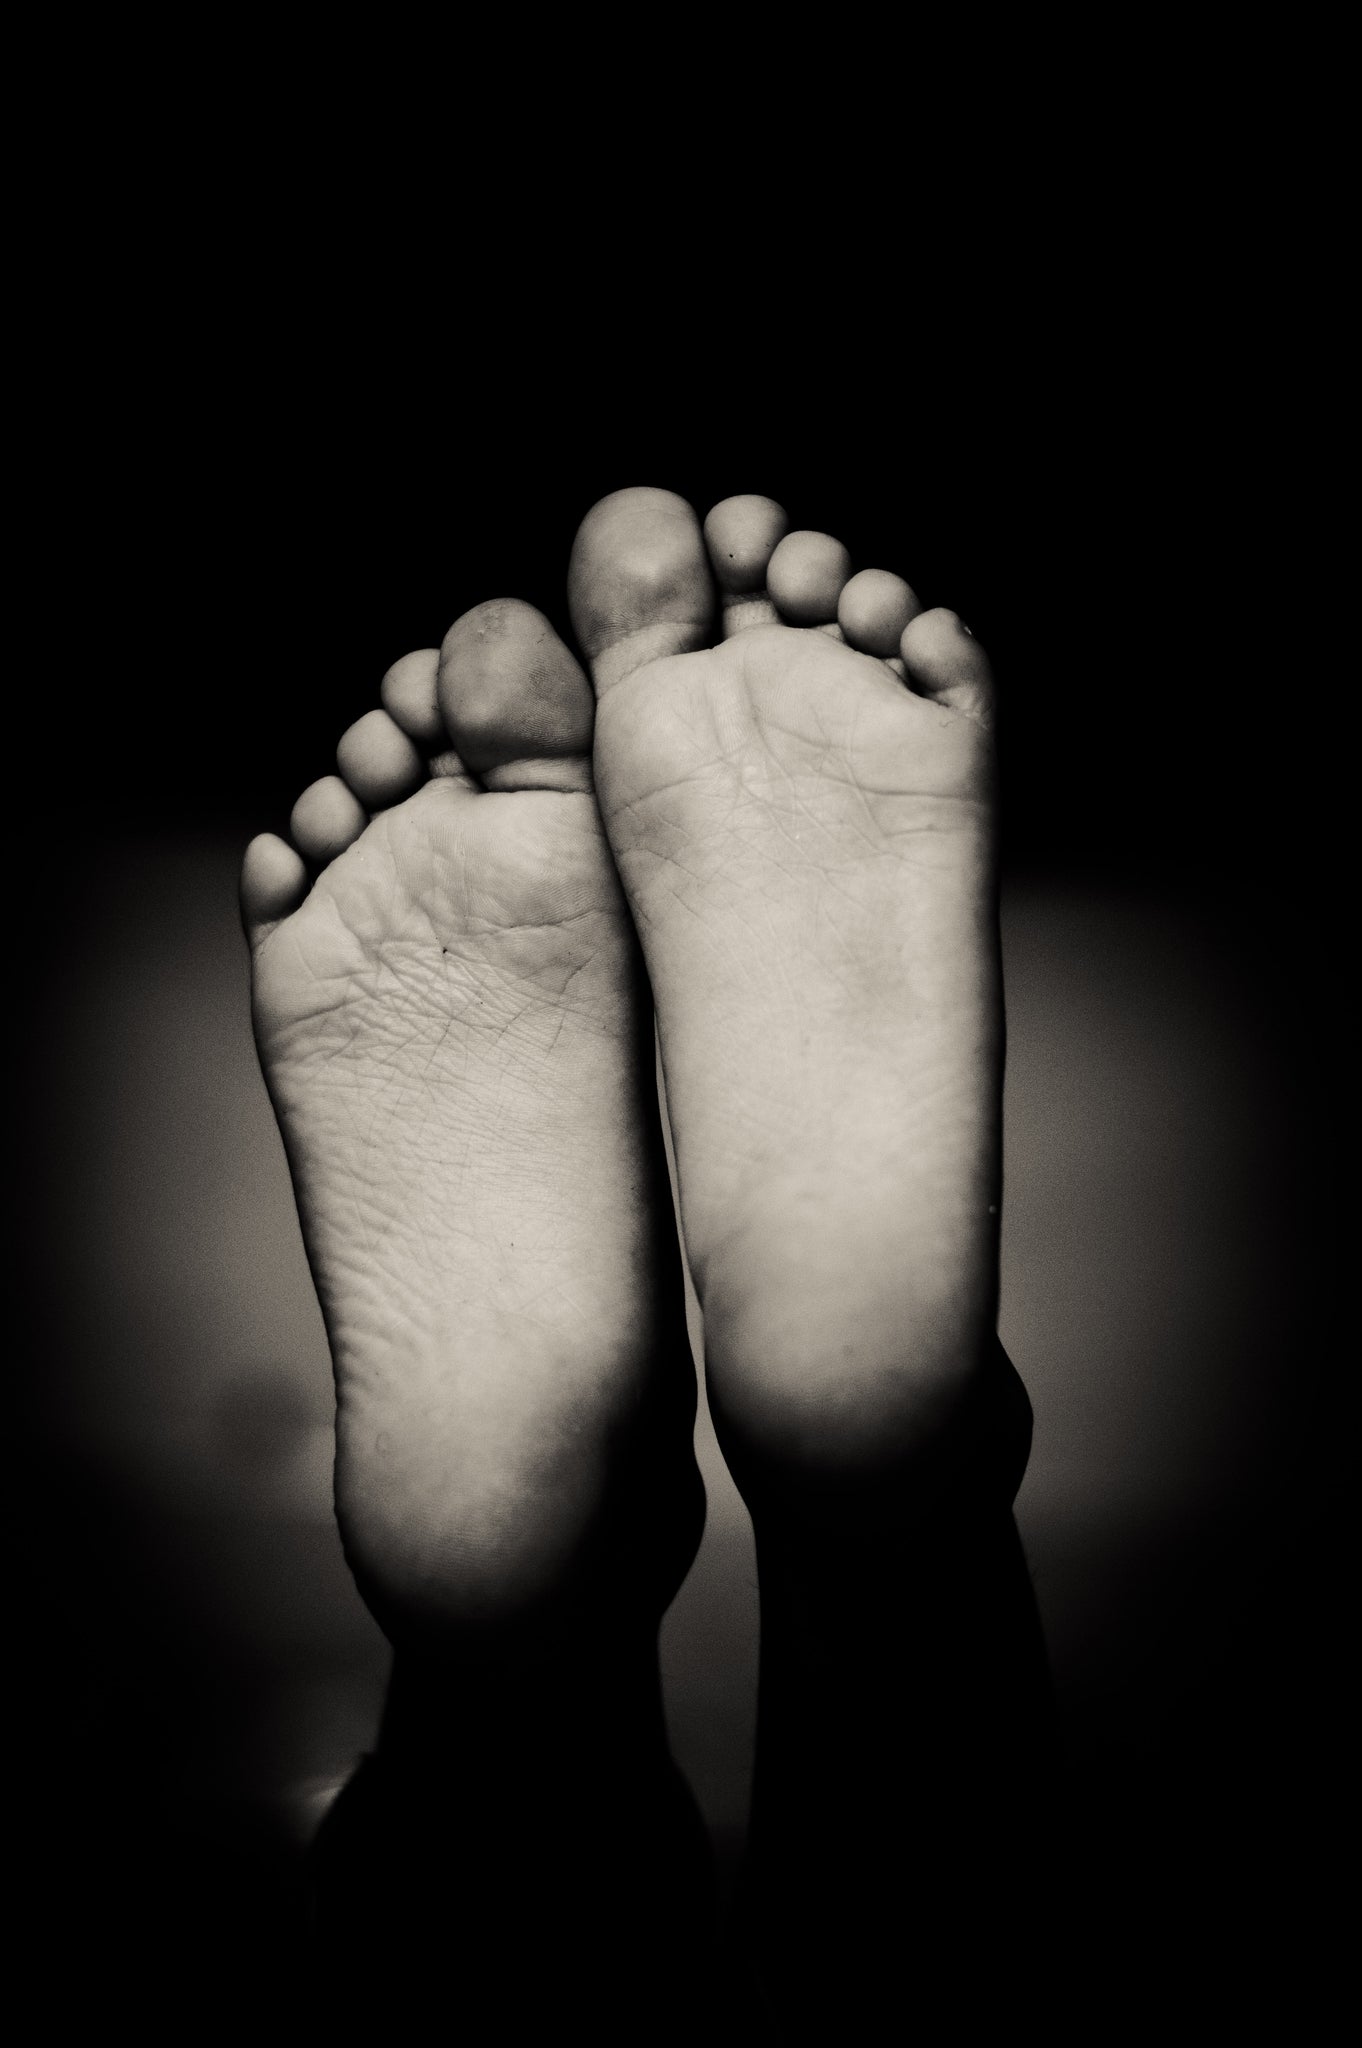 Feet Photo by Danie Franco on Unsplash